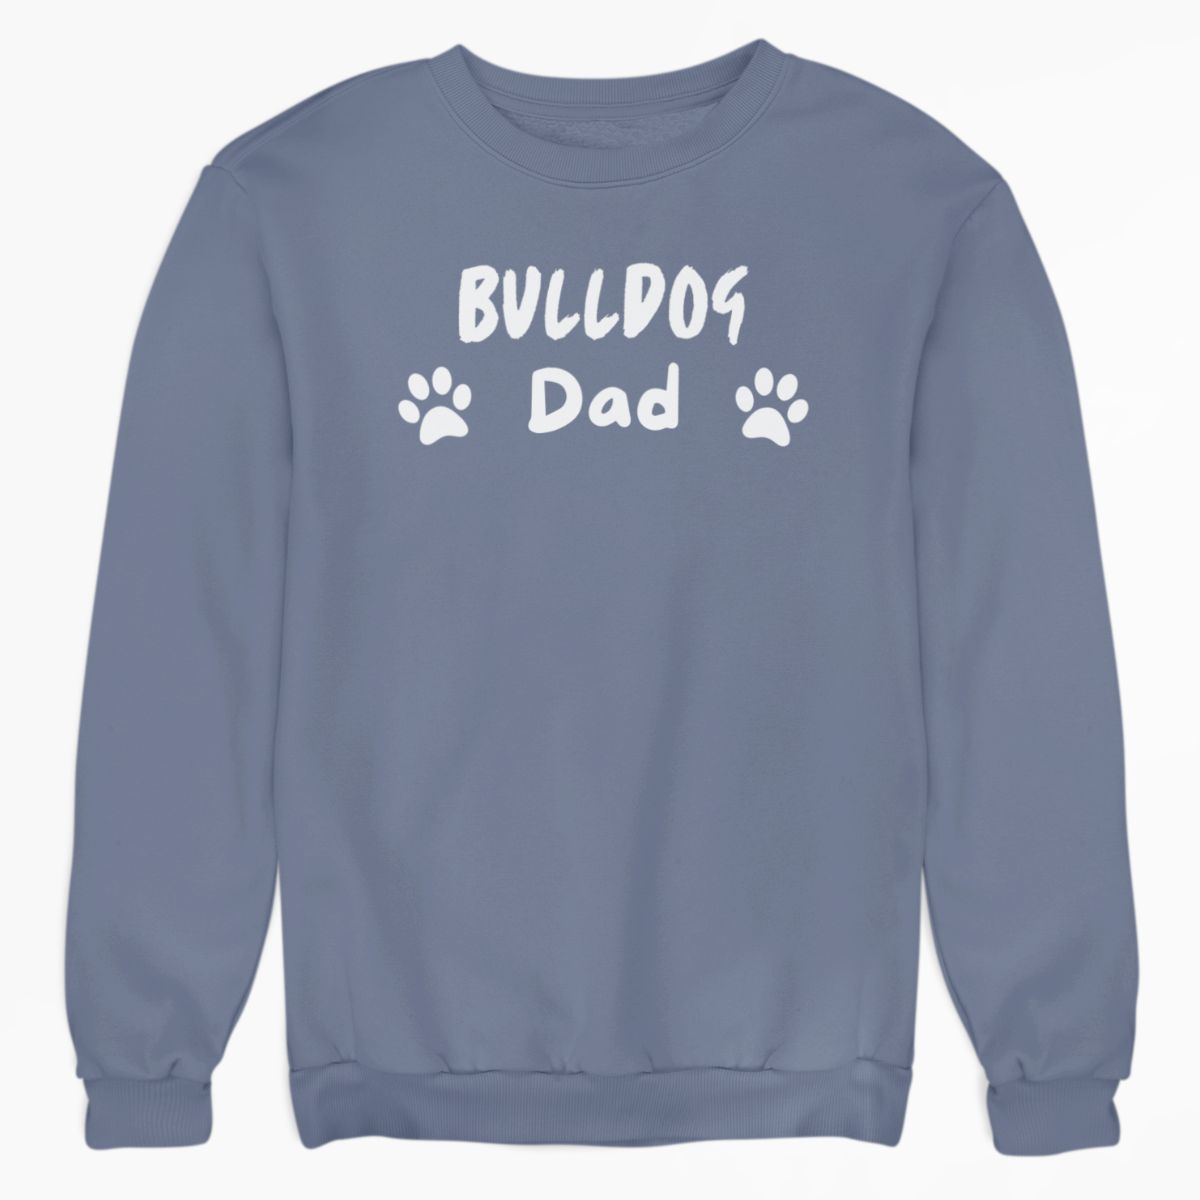 Bulldog Dad Shirt